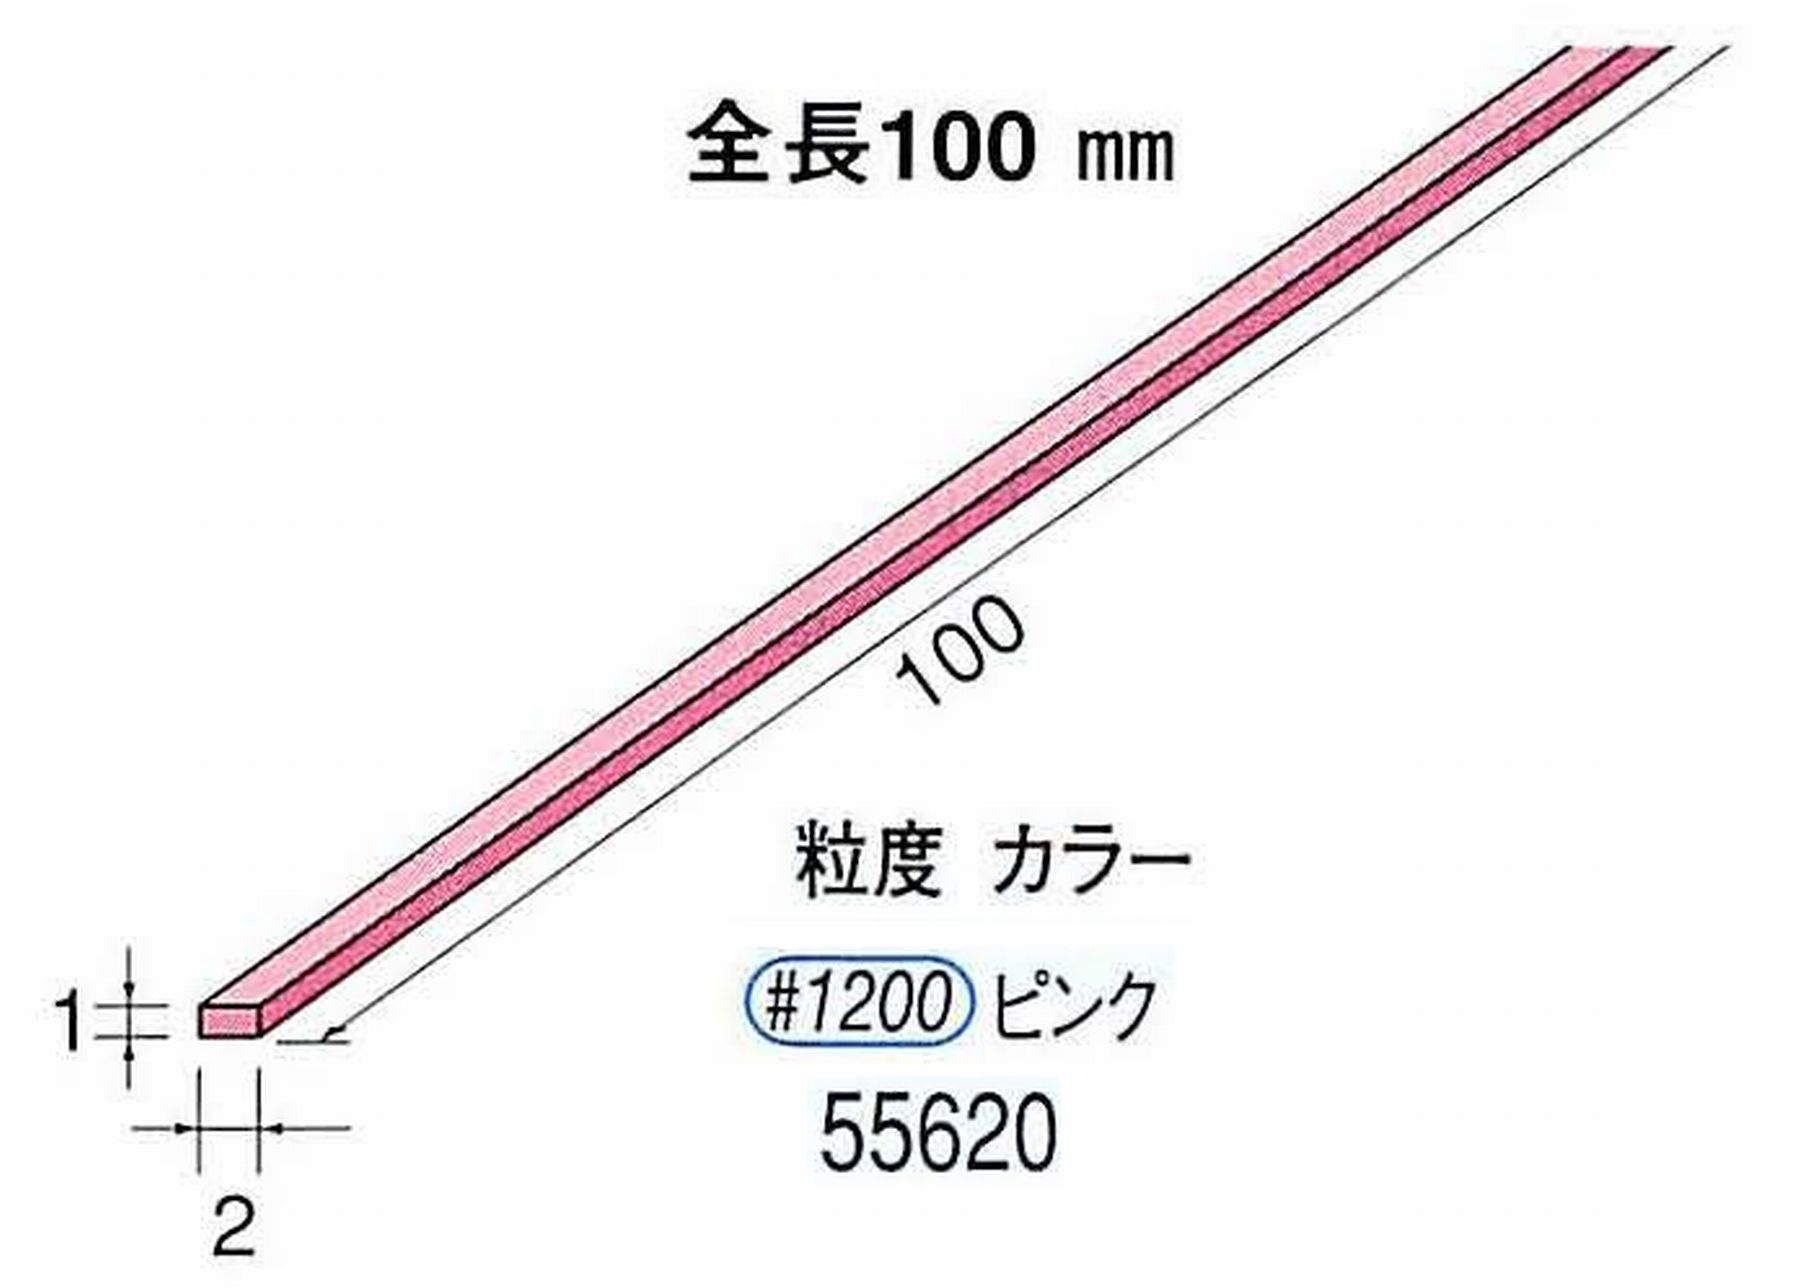 ナカニシ/NAKANISHI セラファイバー砥石 全長100mm ピンク 55620